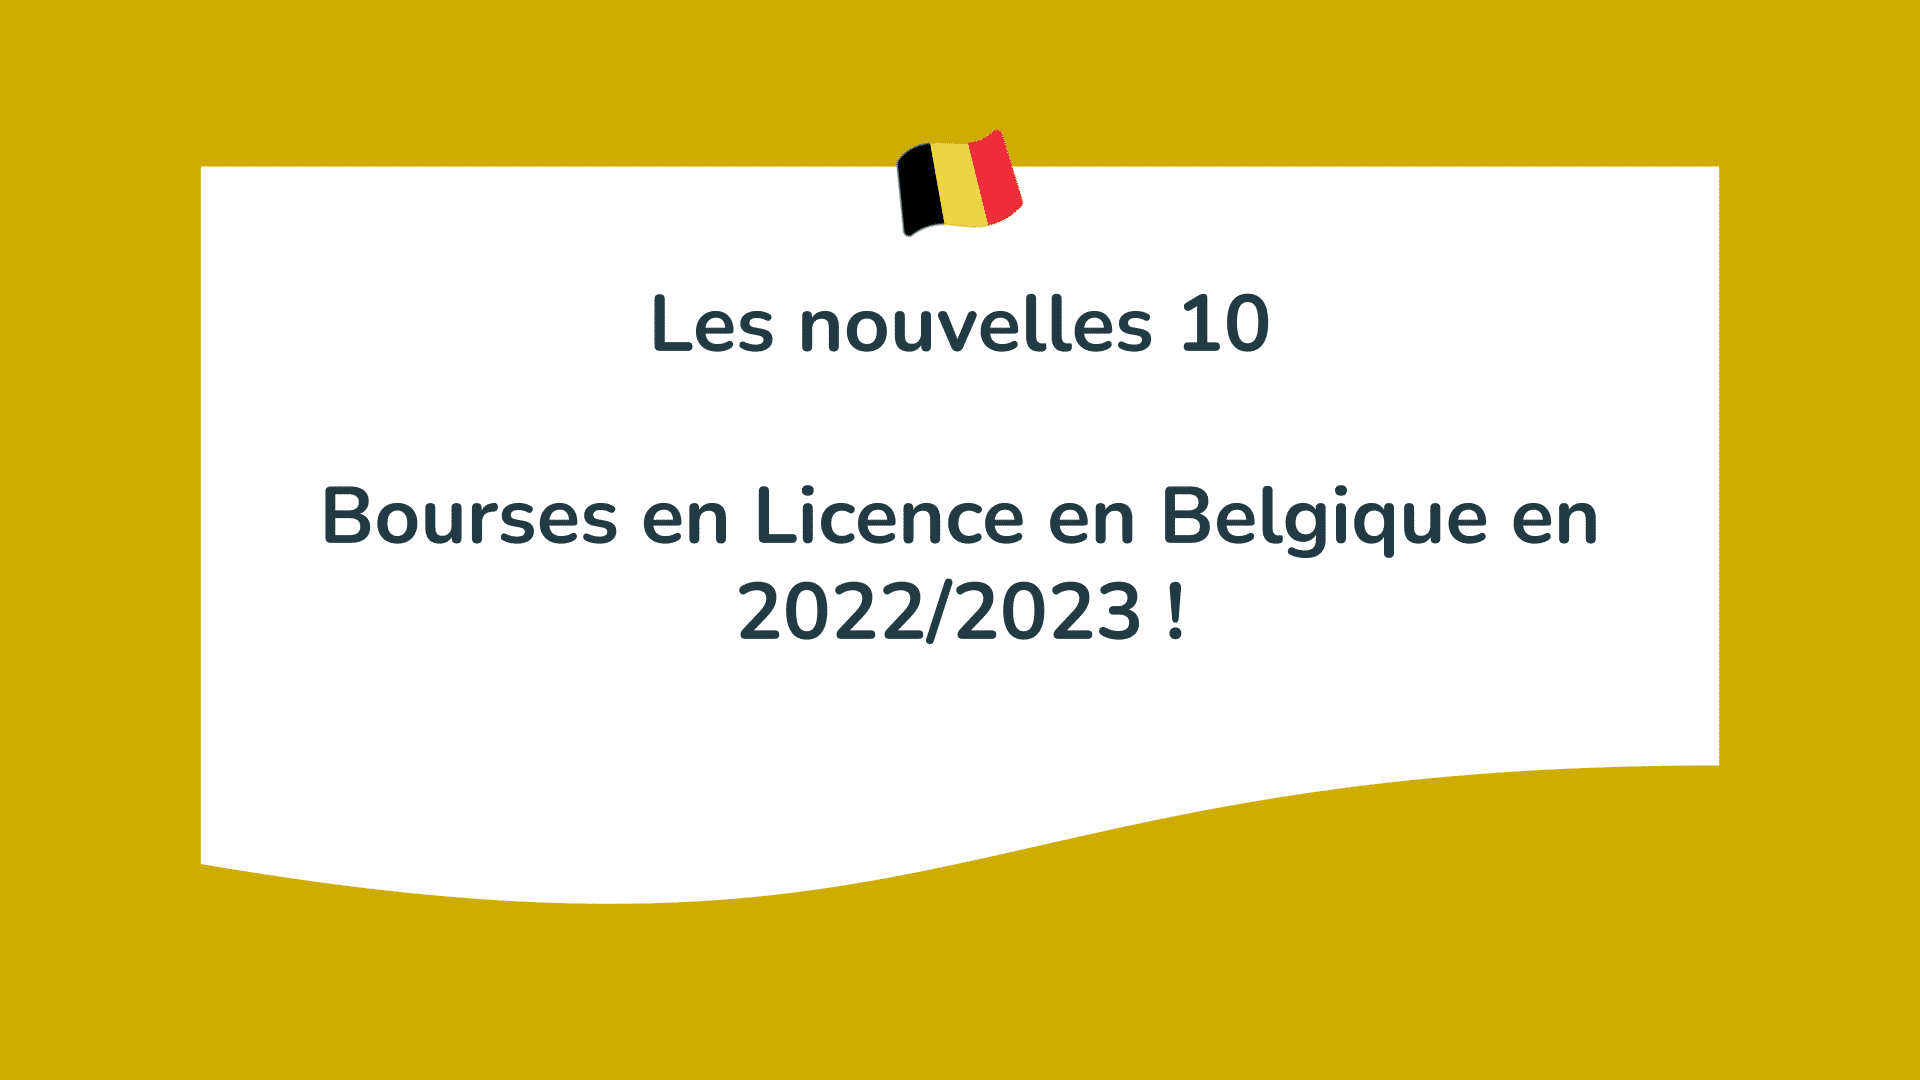 Les nouvelles 10 Bourses en Licence en Belgique en 2022/2023 !